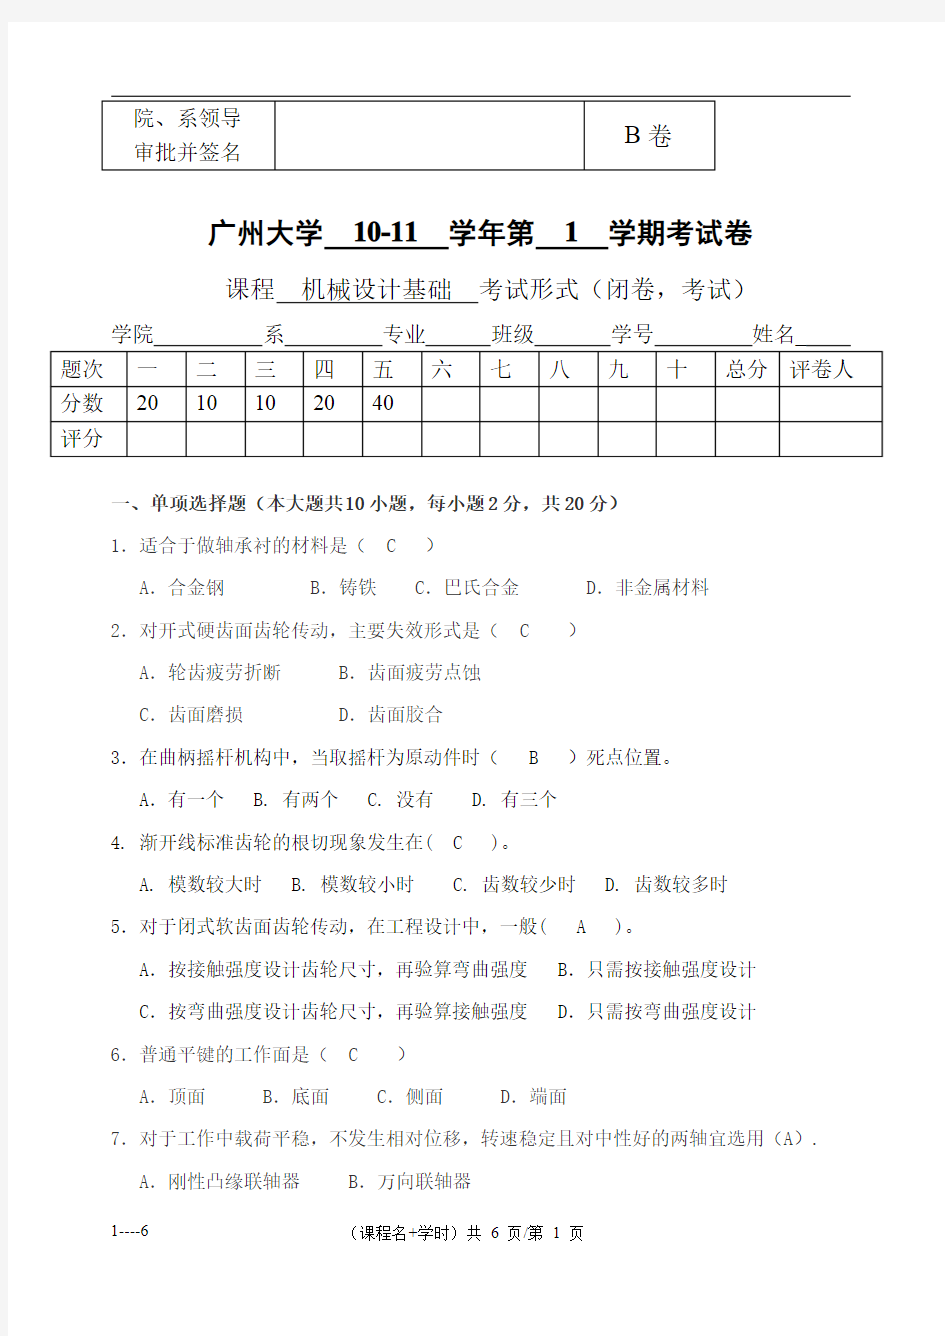 广州大学机械设计基础试题与答案(B)-2010